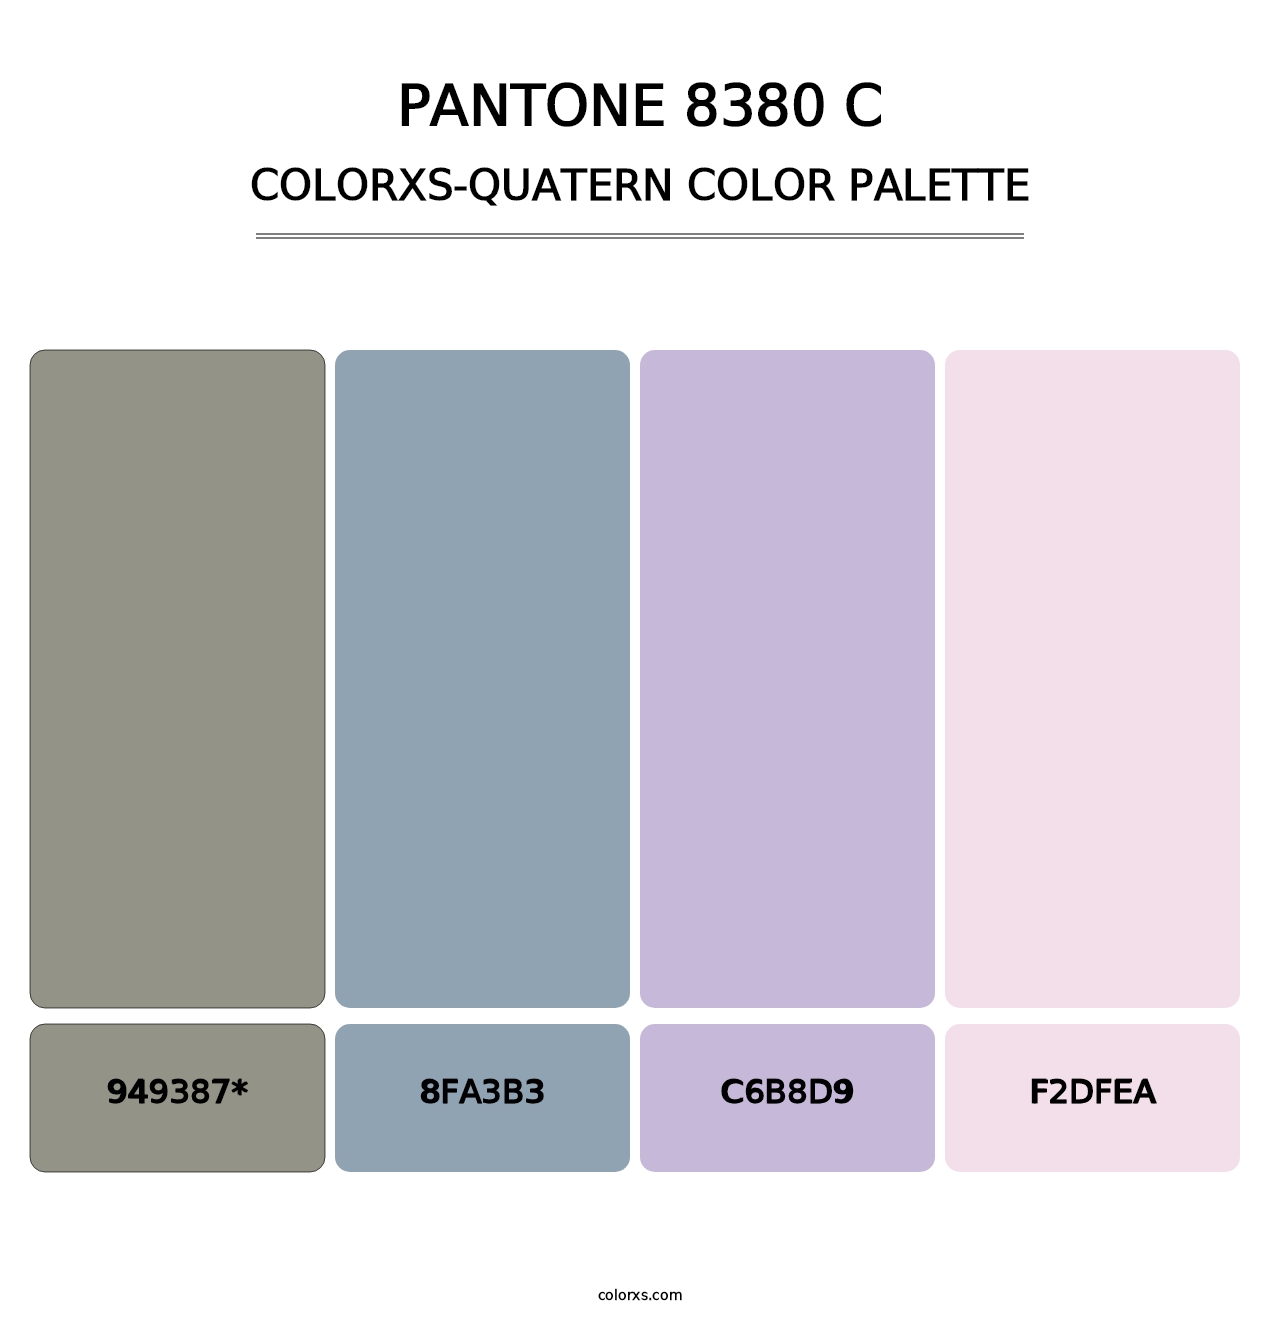 PANTONE 8380 C - Colorxs Quatern Palette